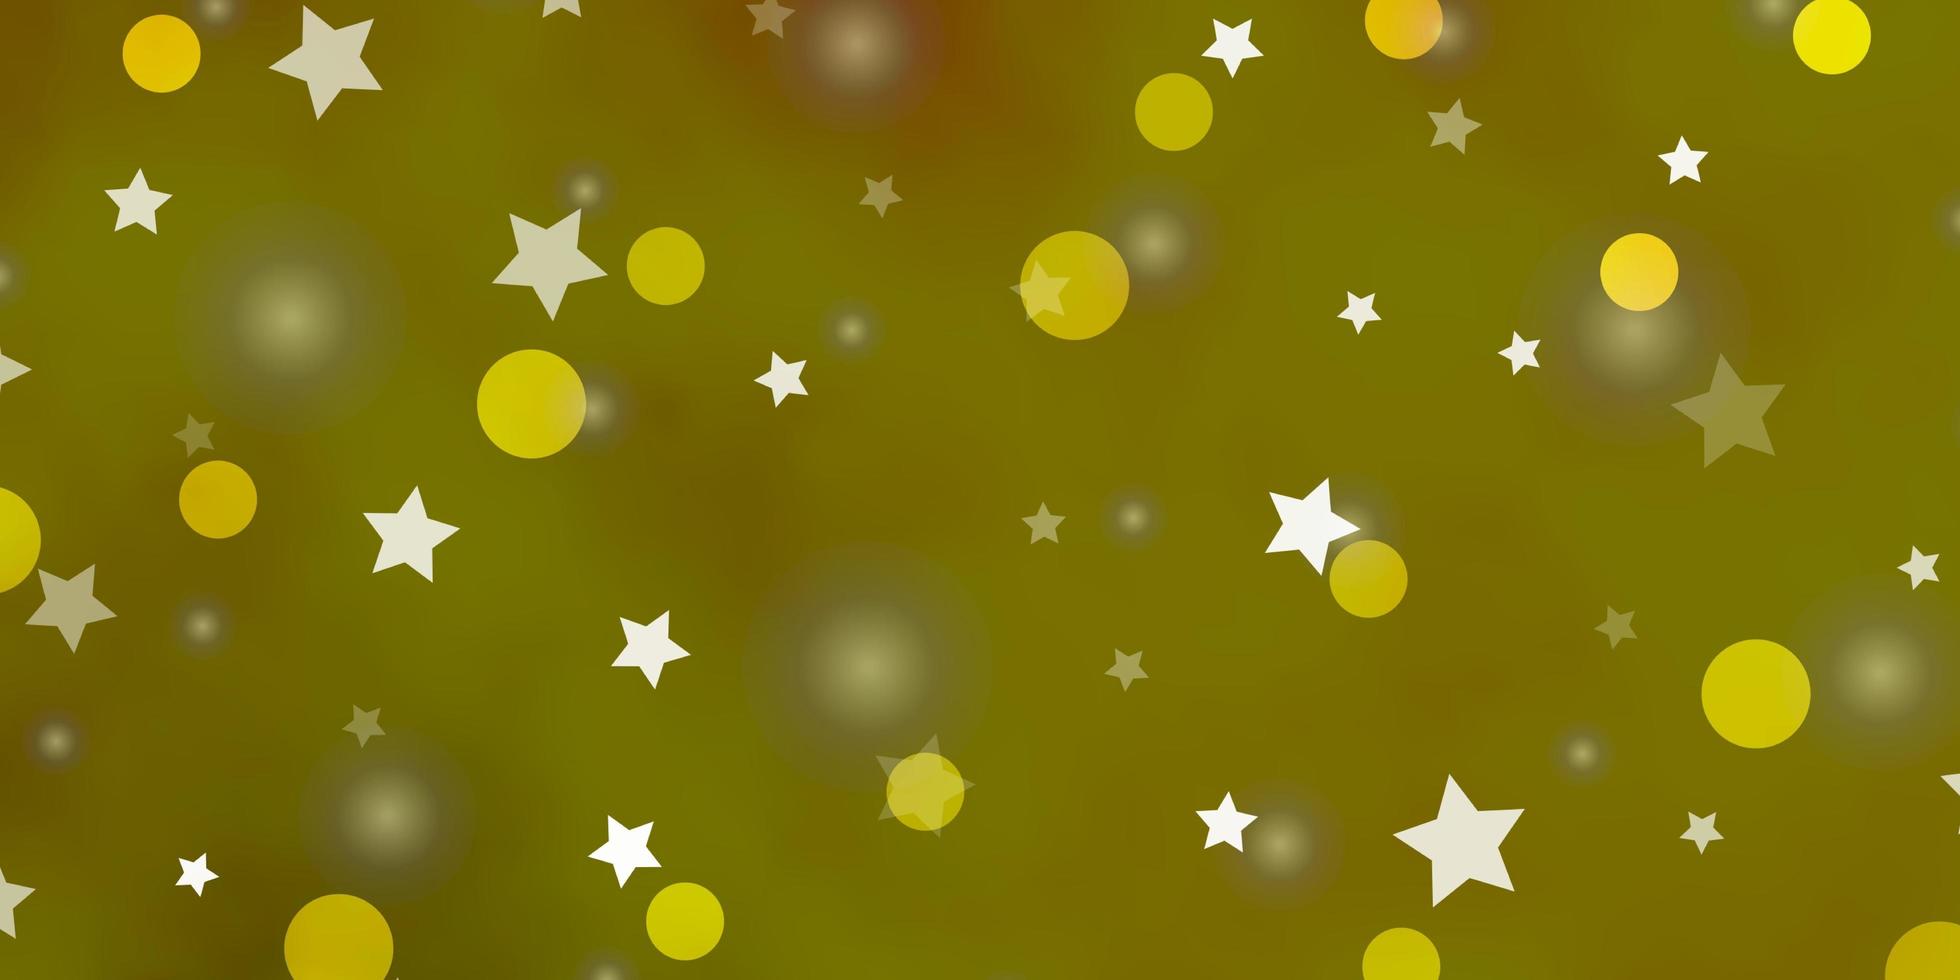 trama vettoriale verde chiaro, giallo con cerchi, stelle.